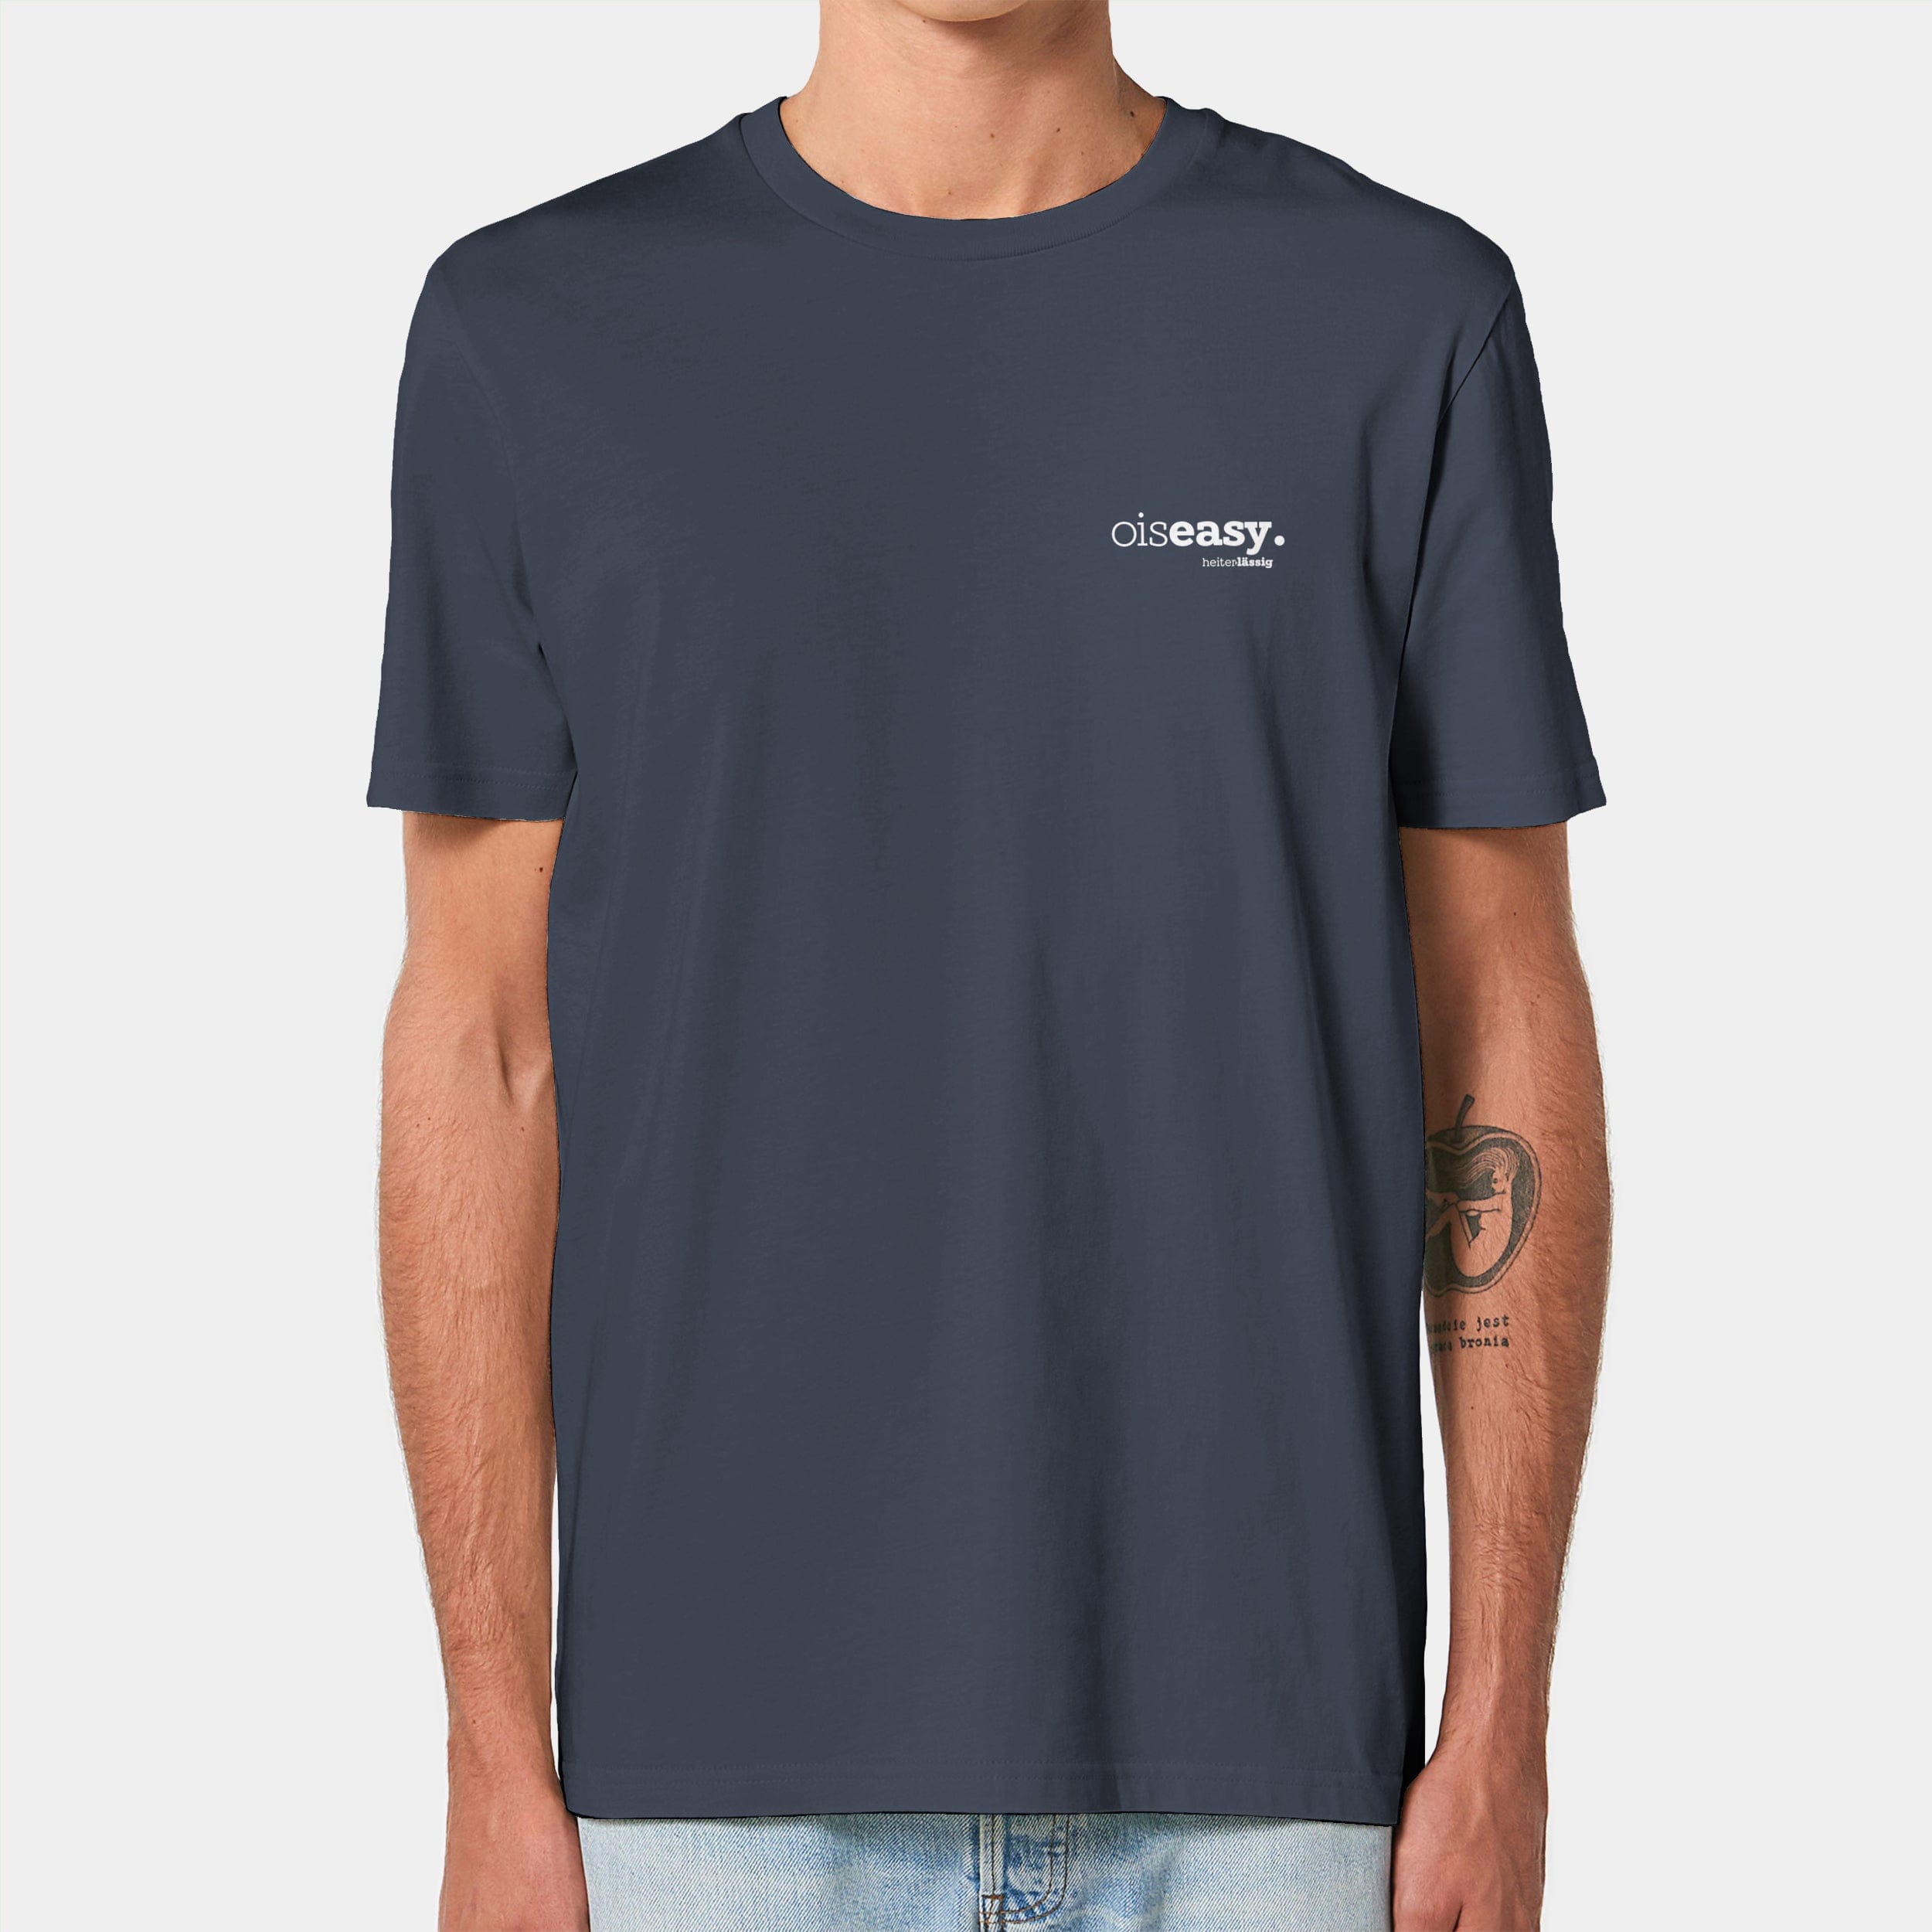 HEITER & LÄSSIG T-Shirt ORIGINAL "oiseasy" XXS / india ink grey - aus nachhaltiger und fairer Produktion